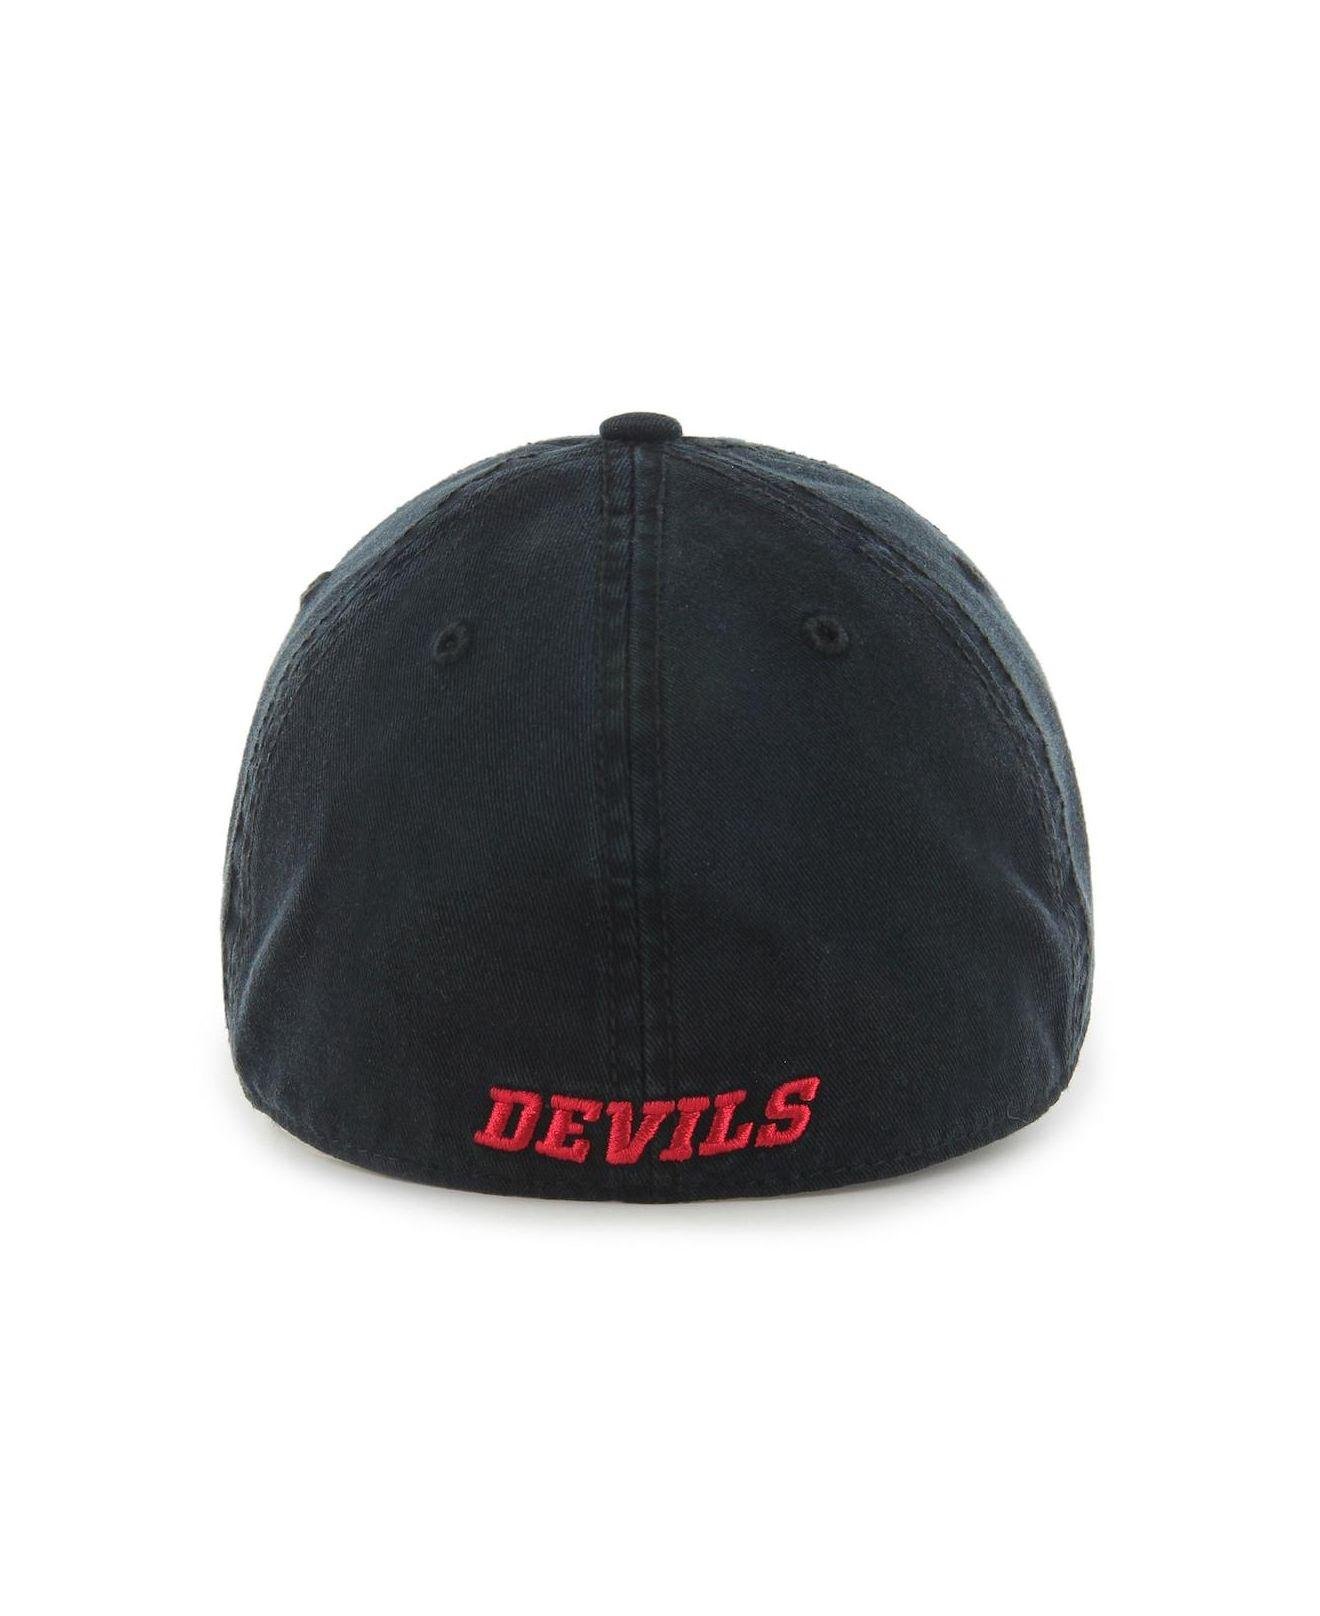 47 New Jersey Devils Men's Vintage Franchise Fitted Hat